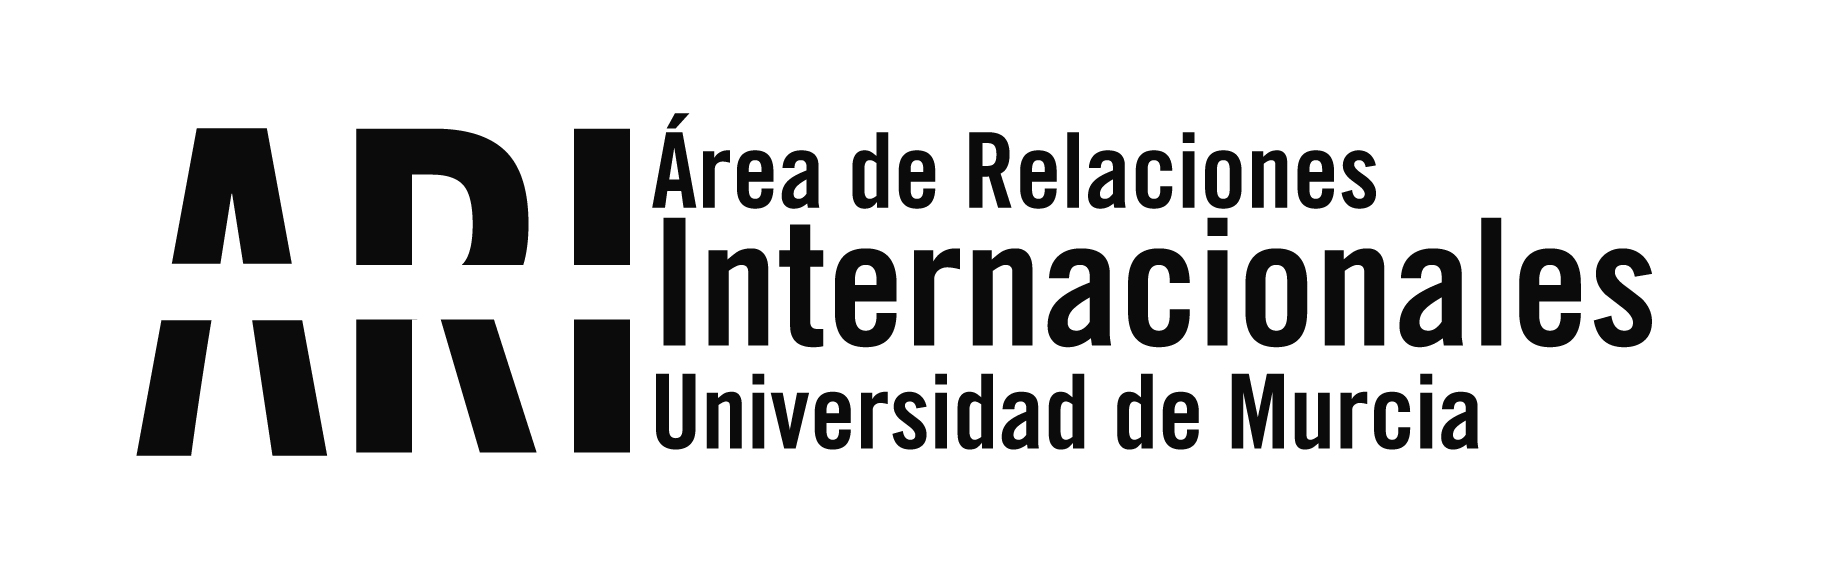 La Universidad de Murcia en USA - Área de Relaciones Internacionales